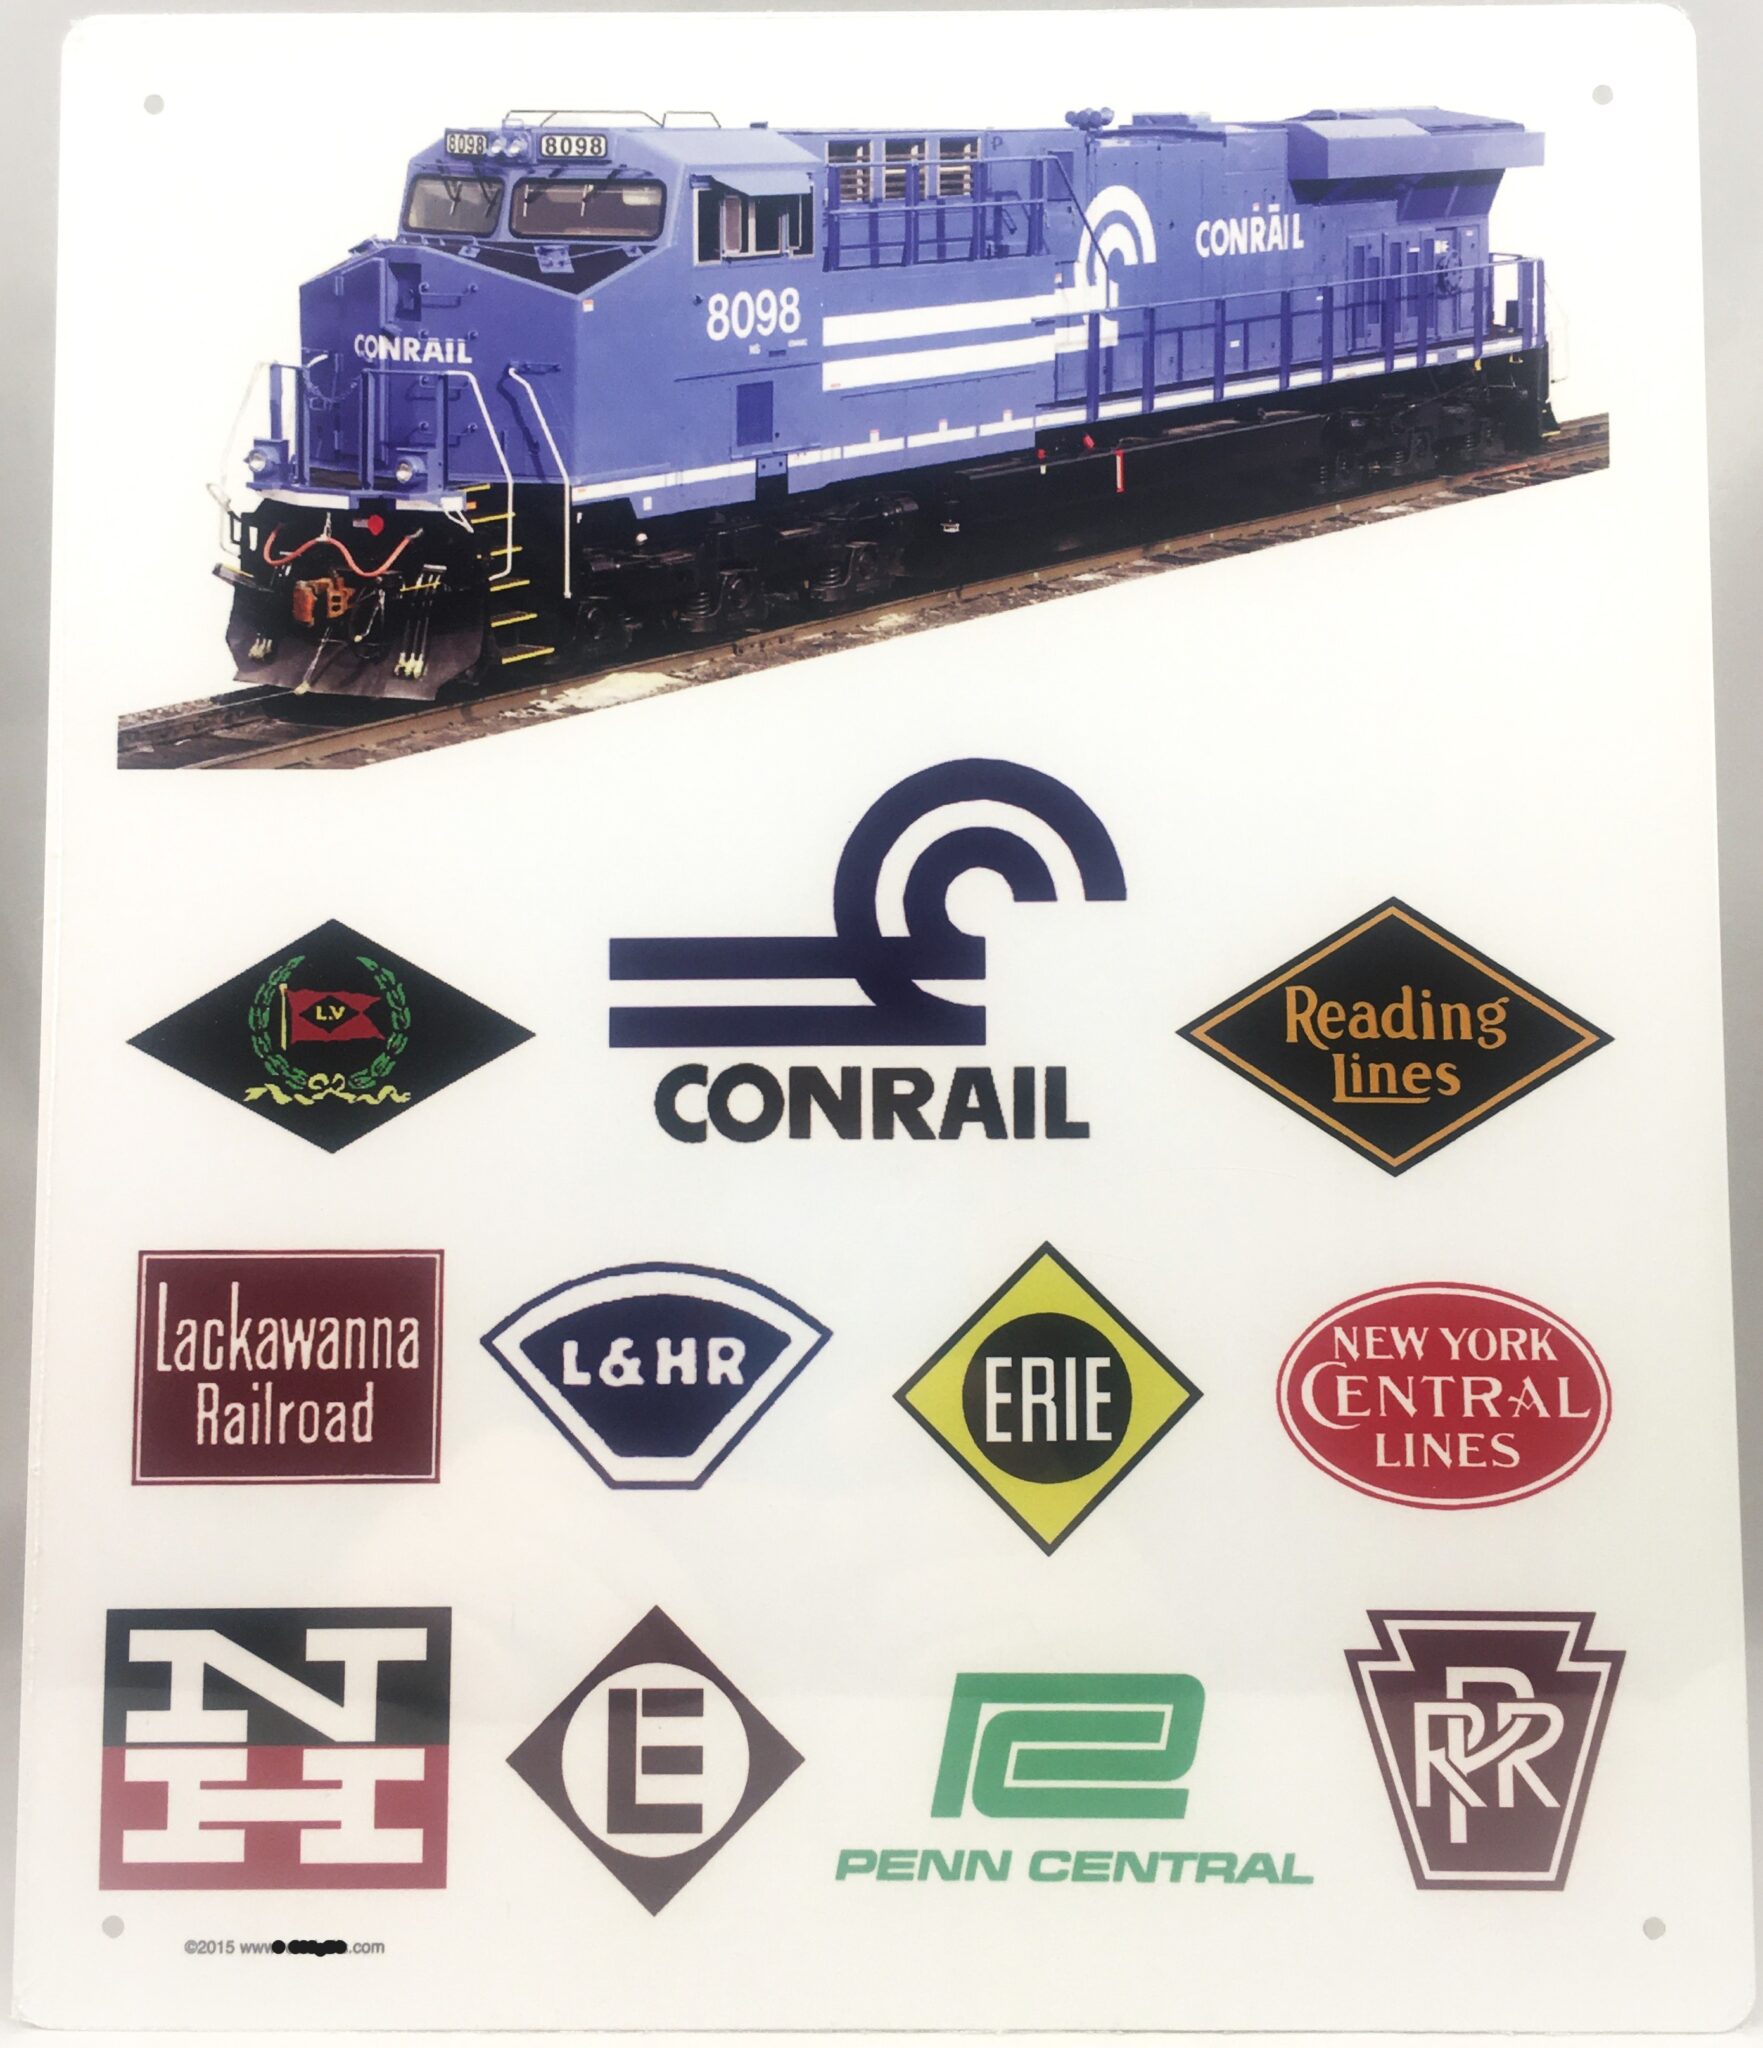 CONRAIL HERITAGE Railroad Sign - MrTrain